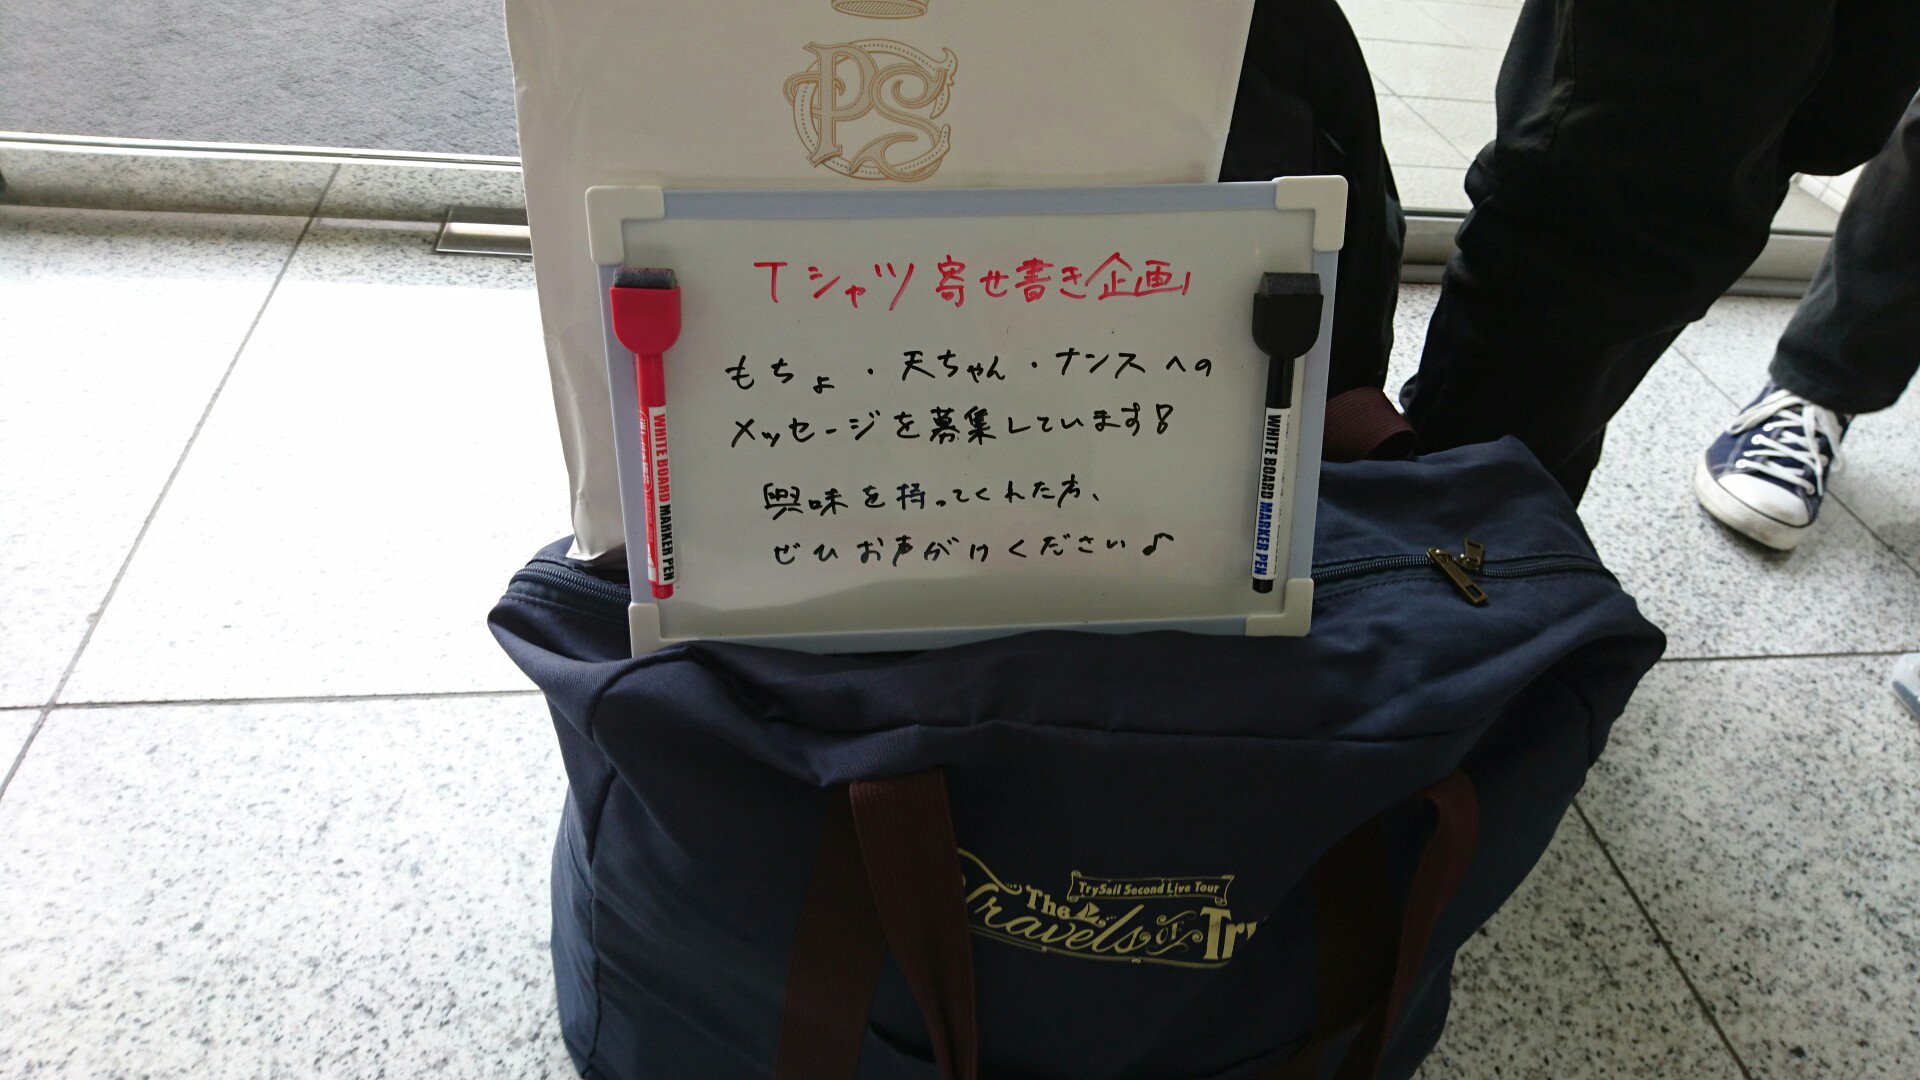 うぇいつぅ On Twitter Tシャツ寄せ書き企画 Trysailツアー広島会場で広げてまーす フラスタの向かいで待機してるのでぜひ遠慮なくお声がけください